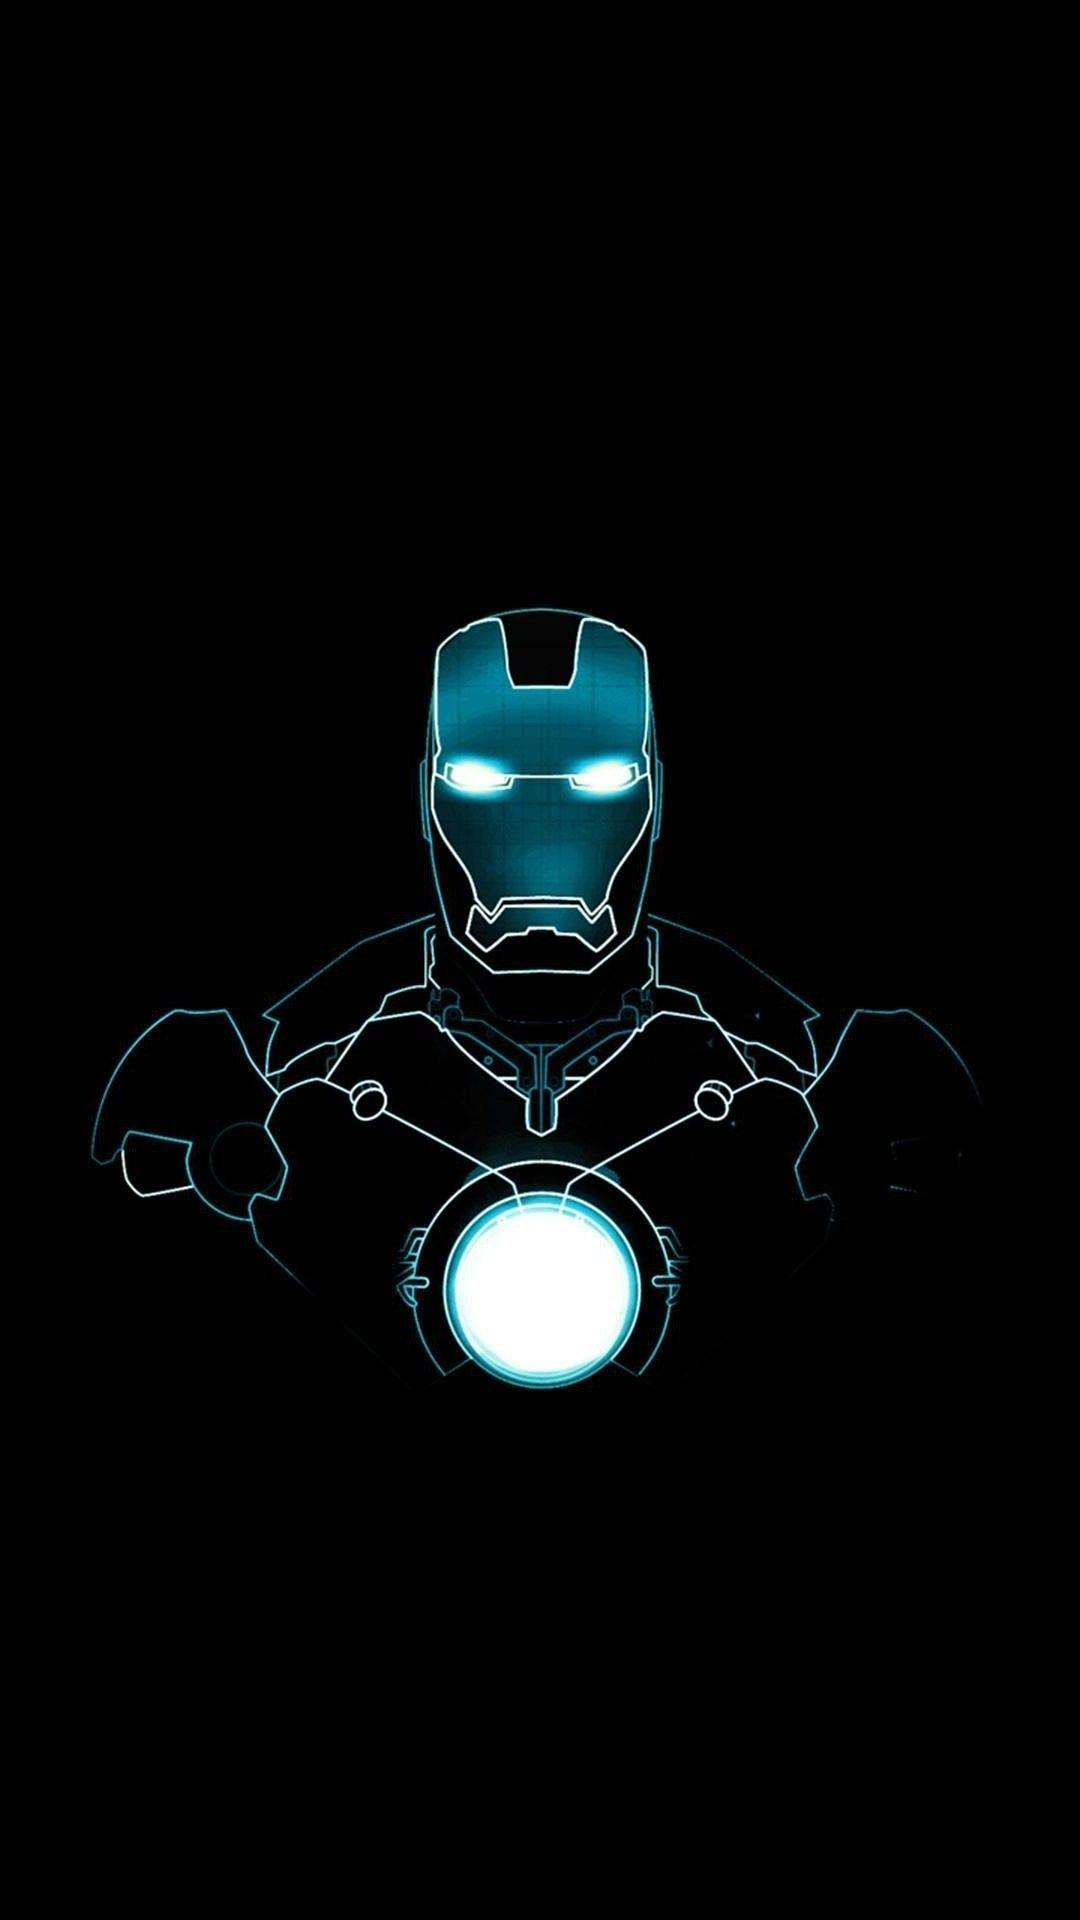 Hình nền Iron Man độc đáo và ấn tượng sẽ được hiển thị hoàn hảo trên màn hình iPhone 11 của bạn. Mẫu hình nền này sẽ khiến điện thoại của bạn trở nên bắt mắt và phong cách hơn bao giờ hết. Hãy nhấp vào để trải nghiệm ngay!